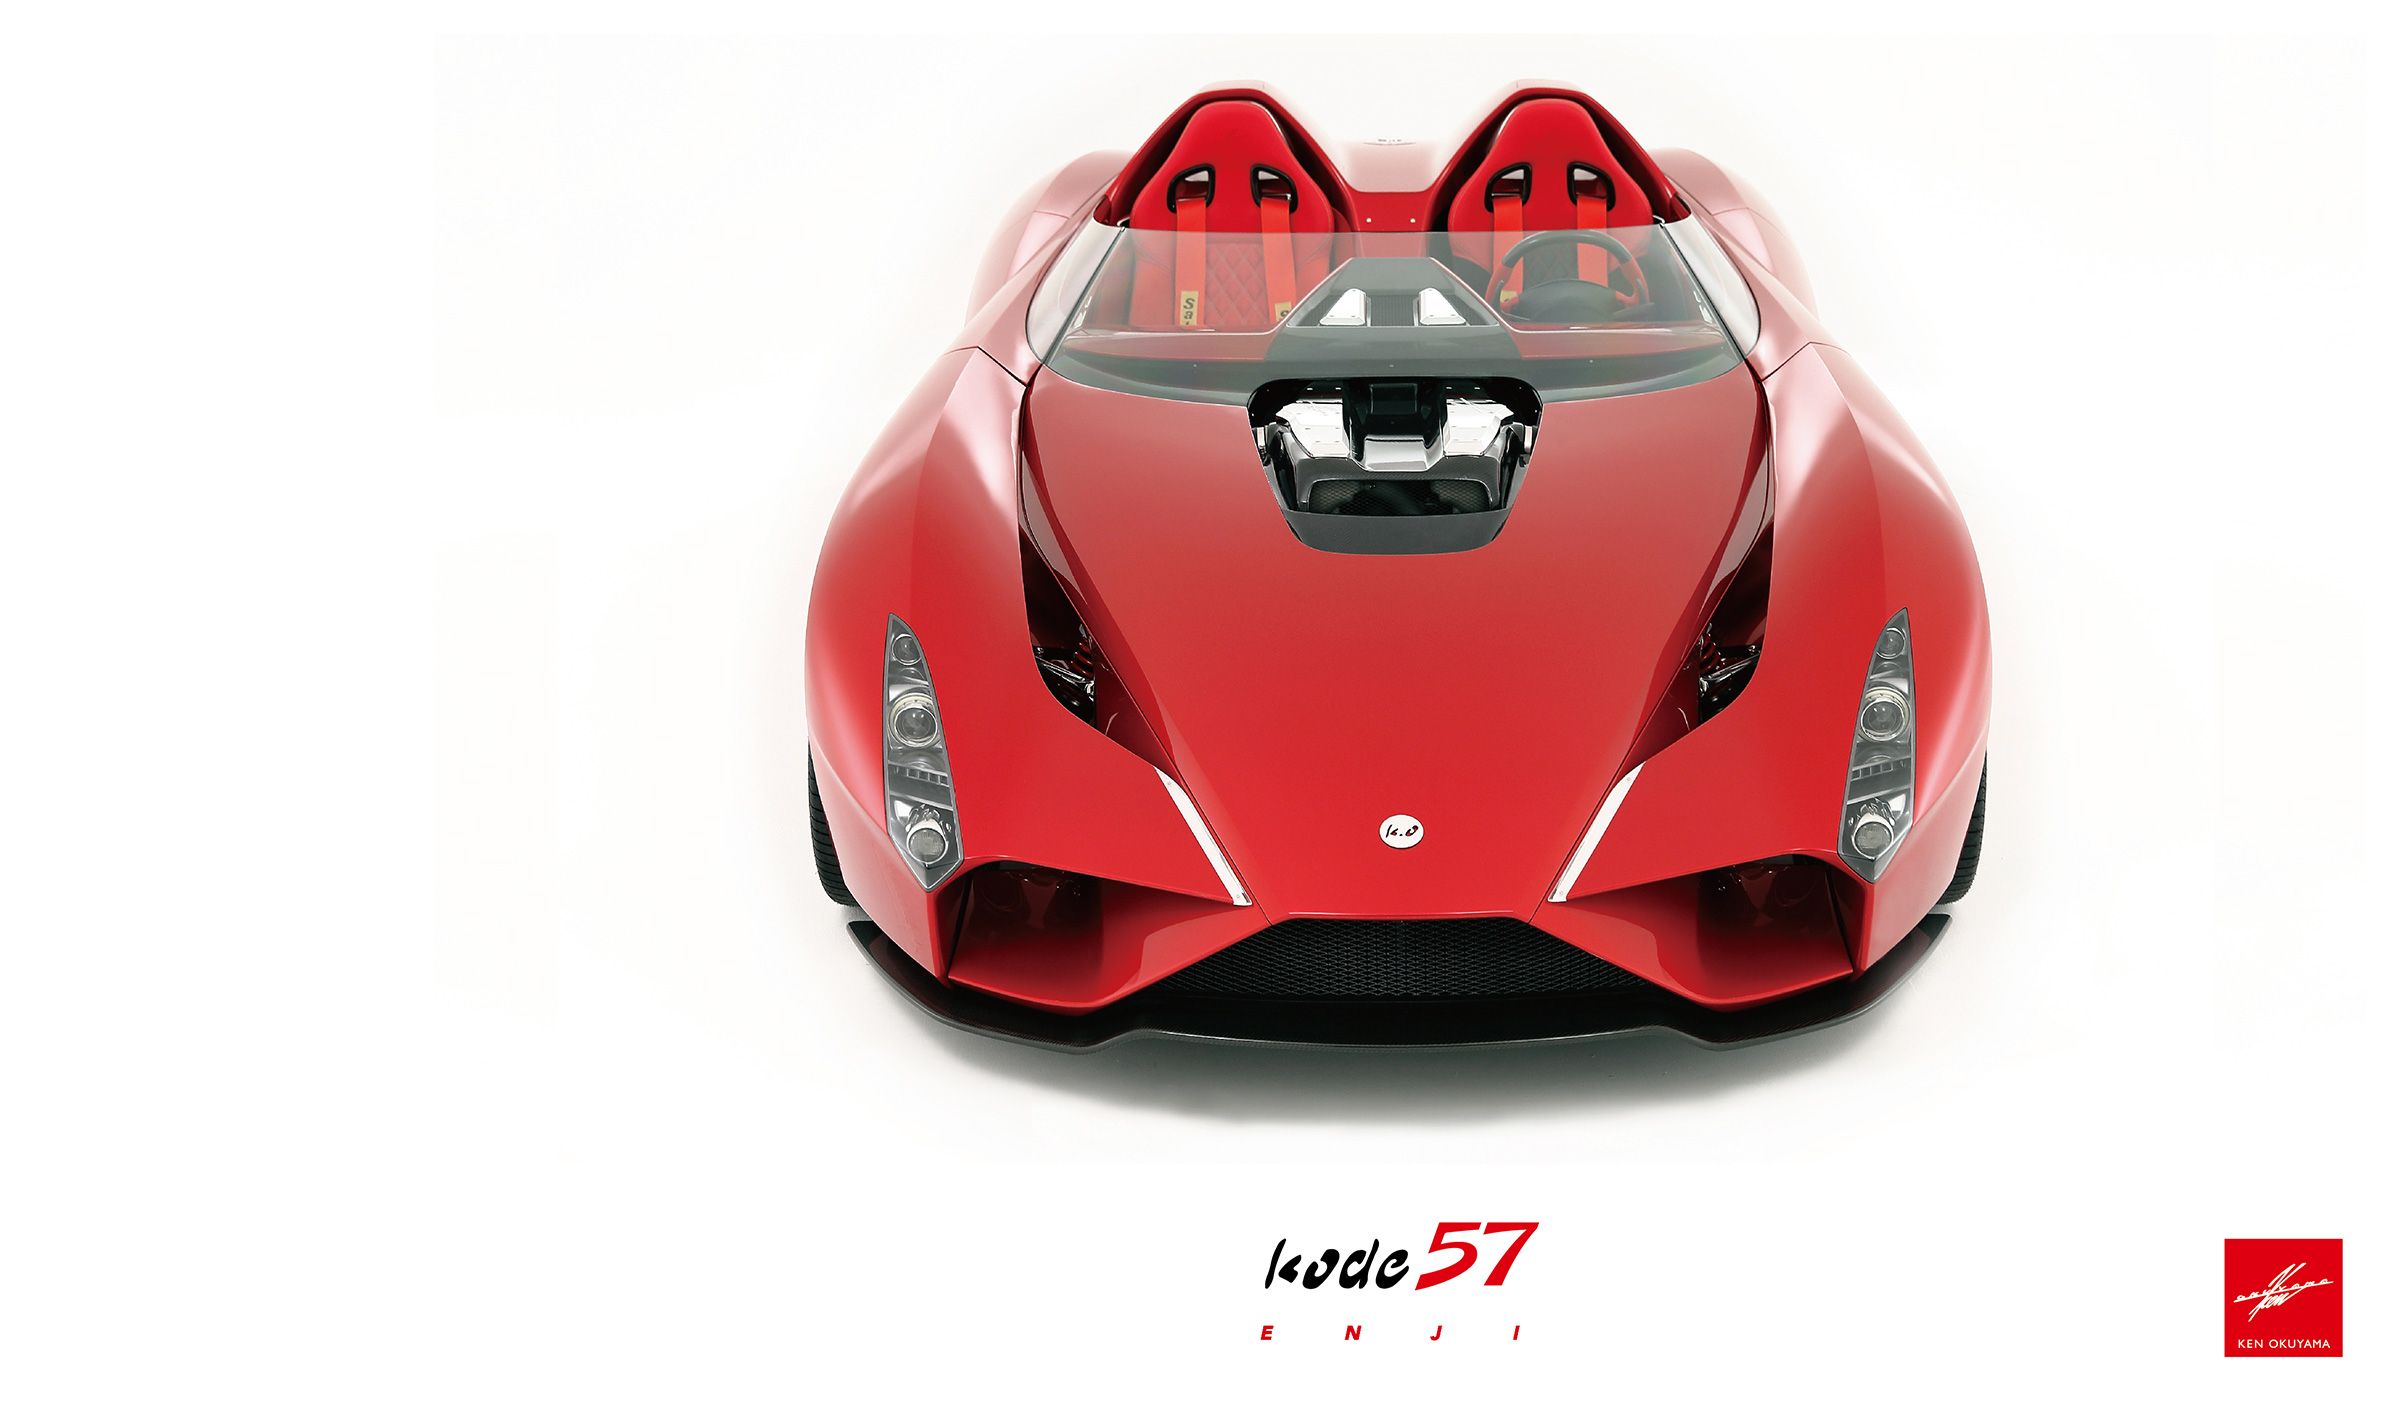 2017 Ken Okuyama Cars Kode57